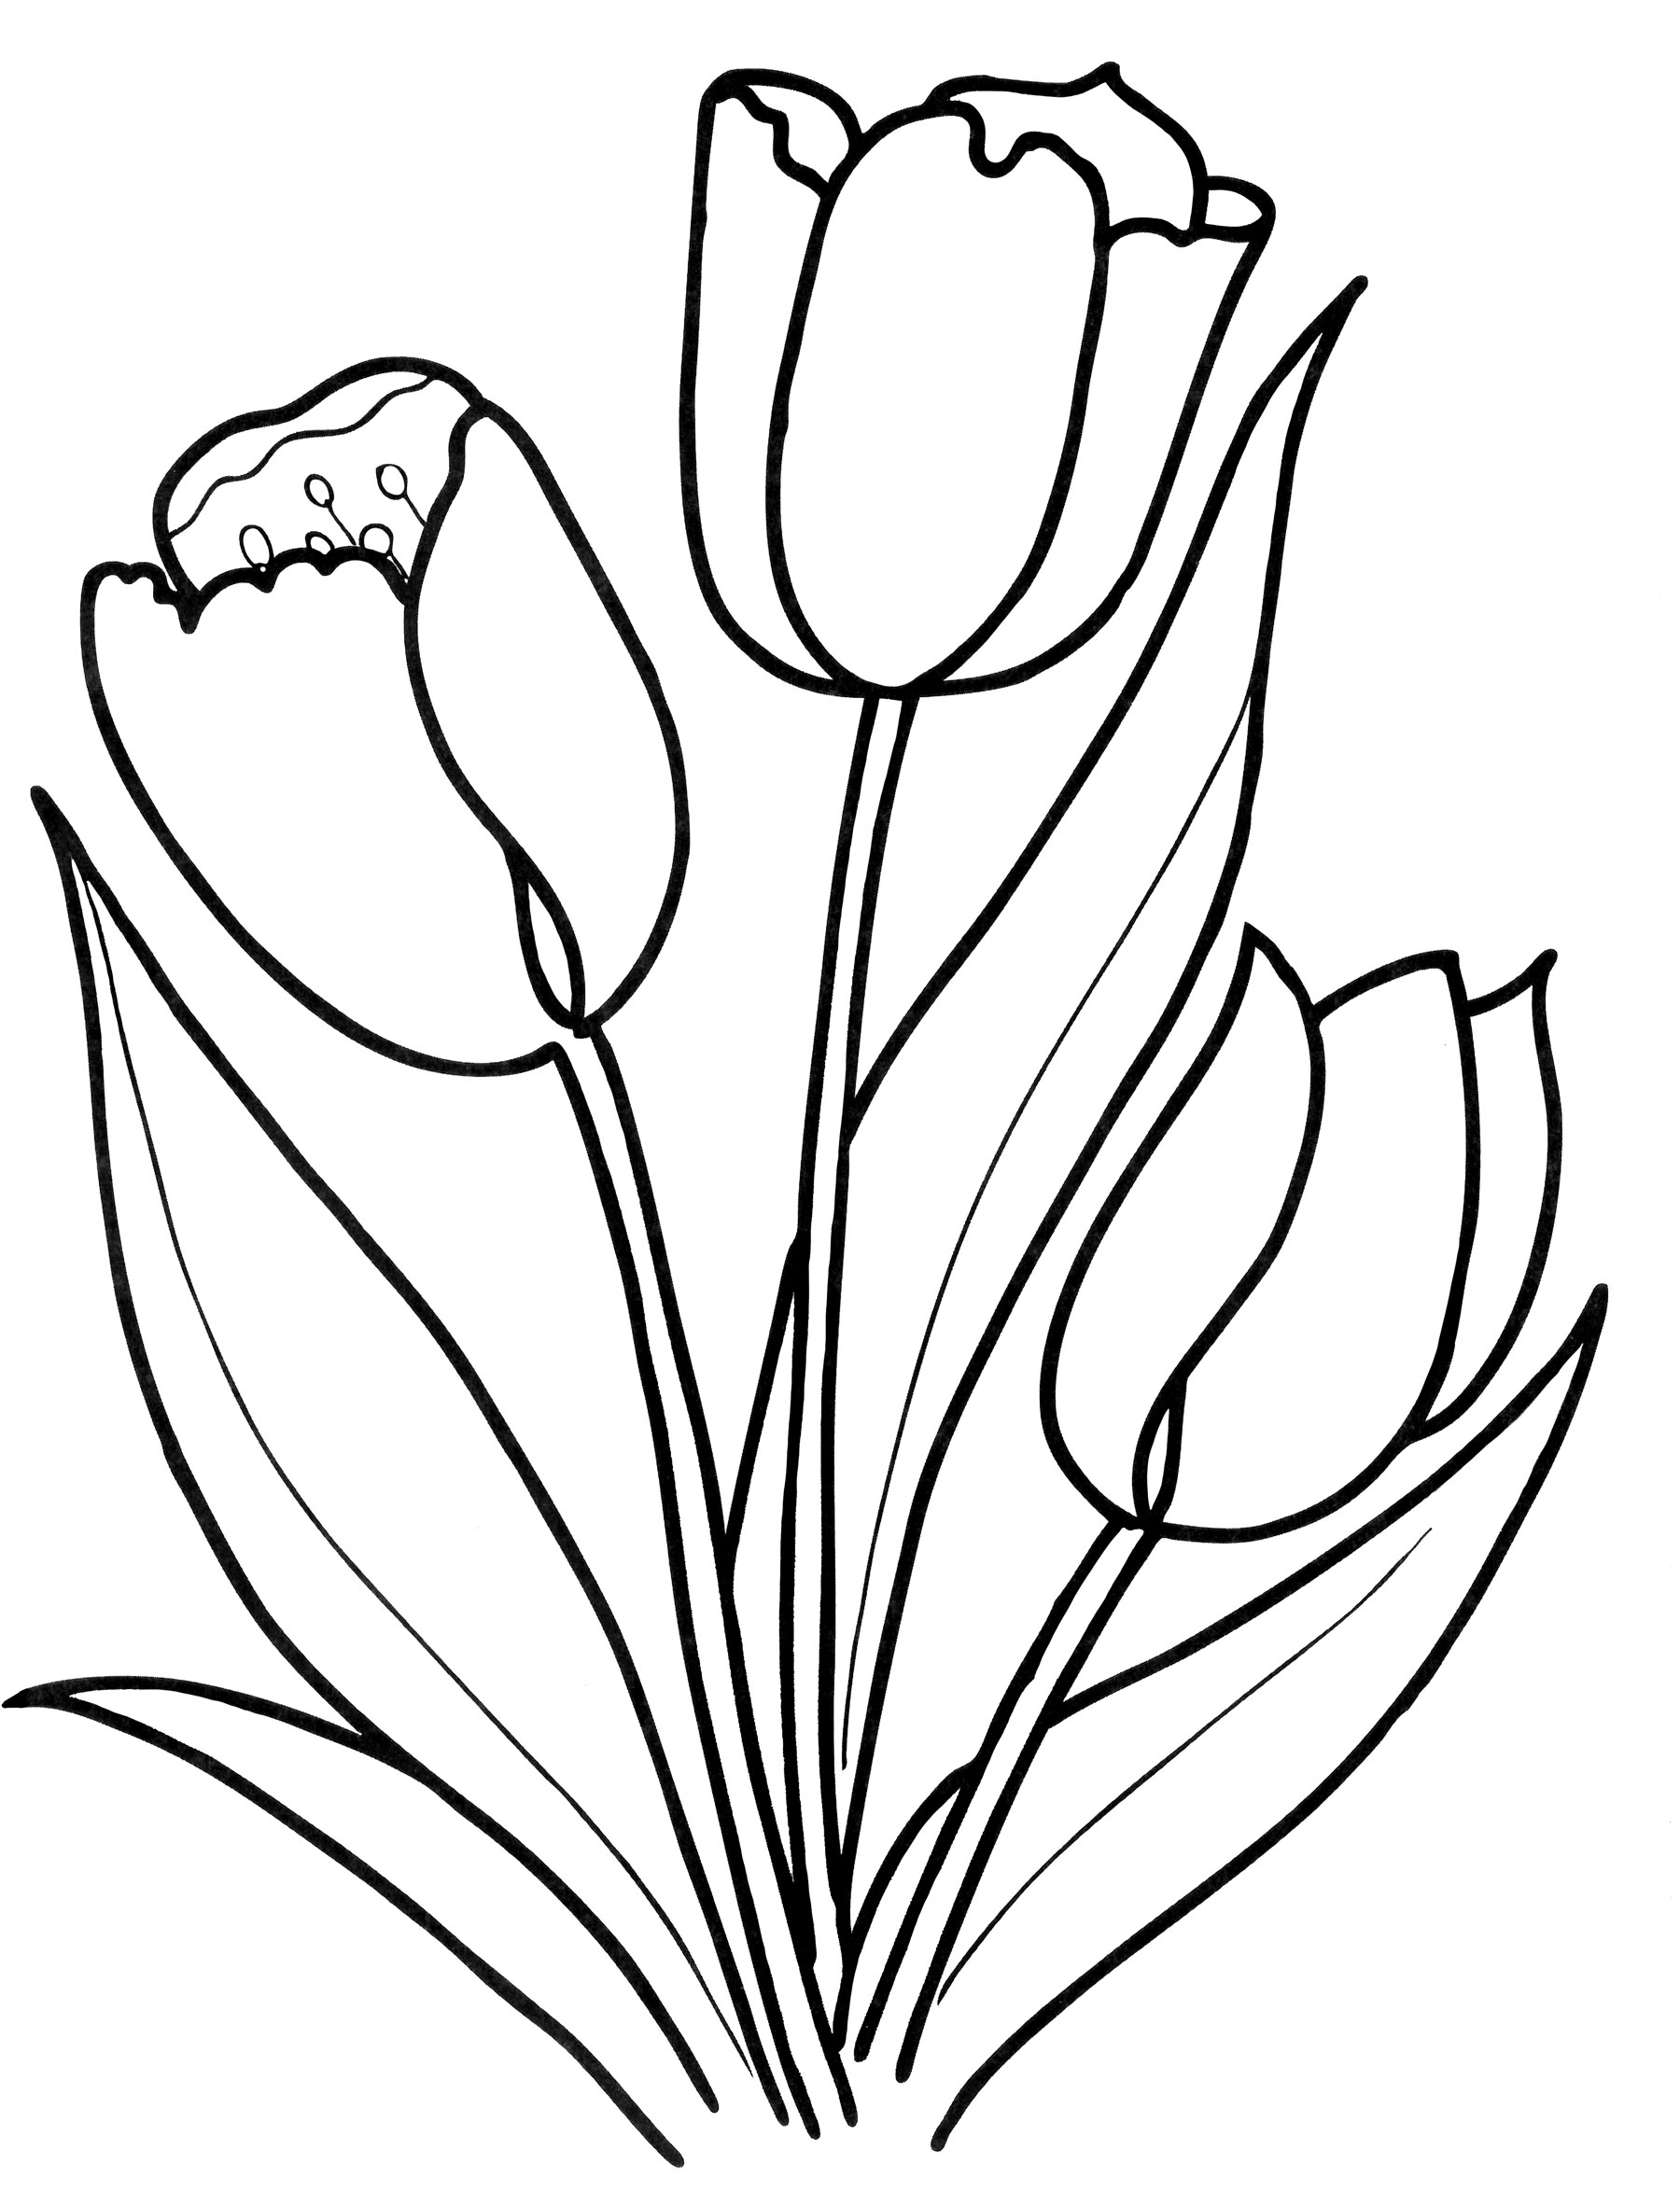 Как нарисовать весенние цветы. Контур букета тюльпанов сбоку. Тюльпан Шренка раскраска. Тюльпан Грейга раскраска. Раскраска цветы тюльпаны.